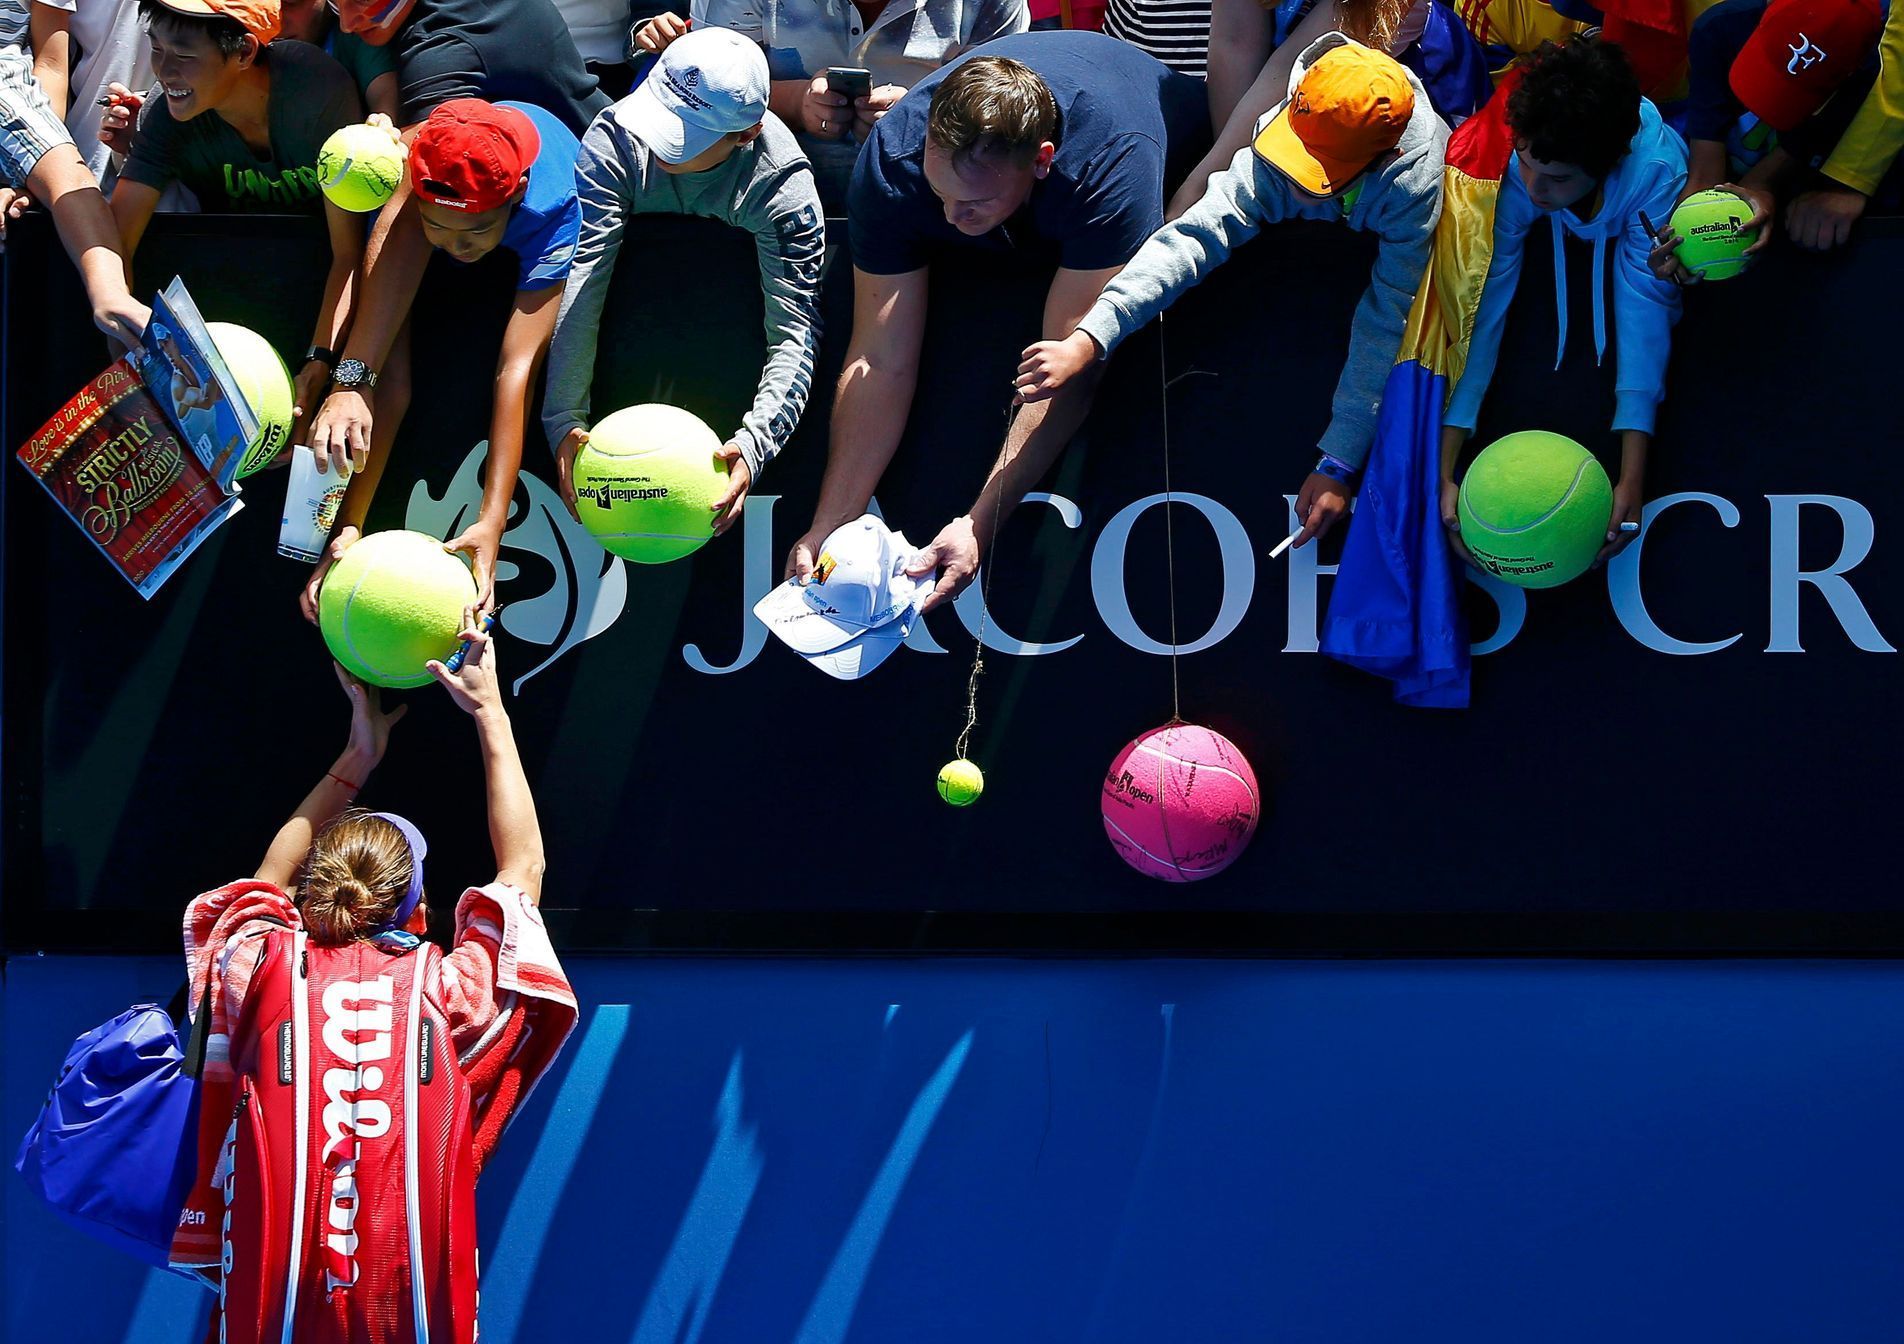 Rumunka Simona Halepová po prvním kole Australian Open